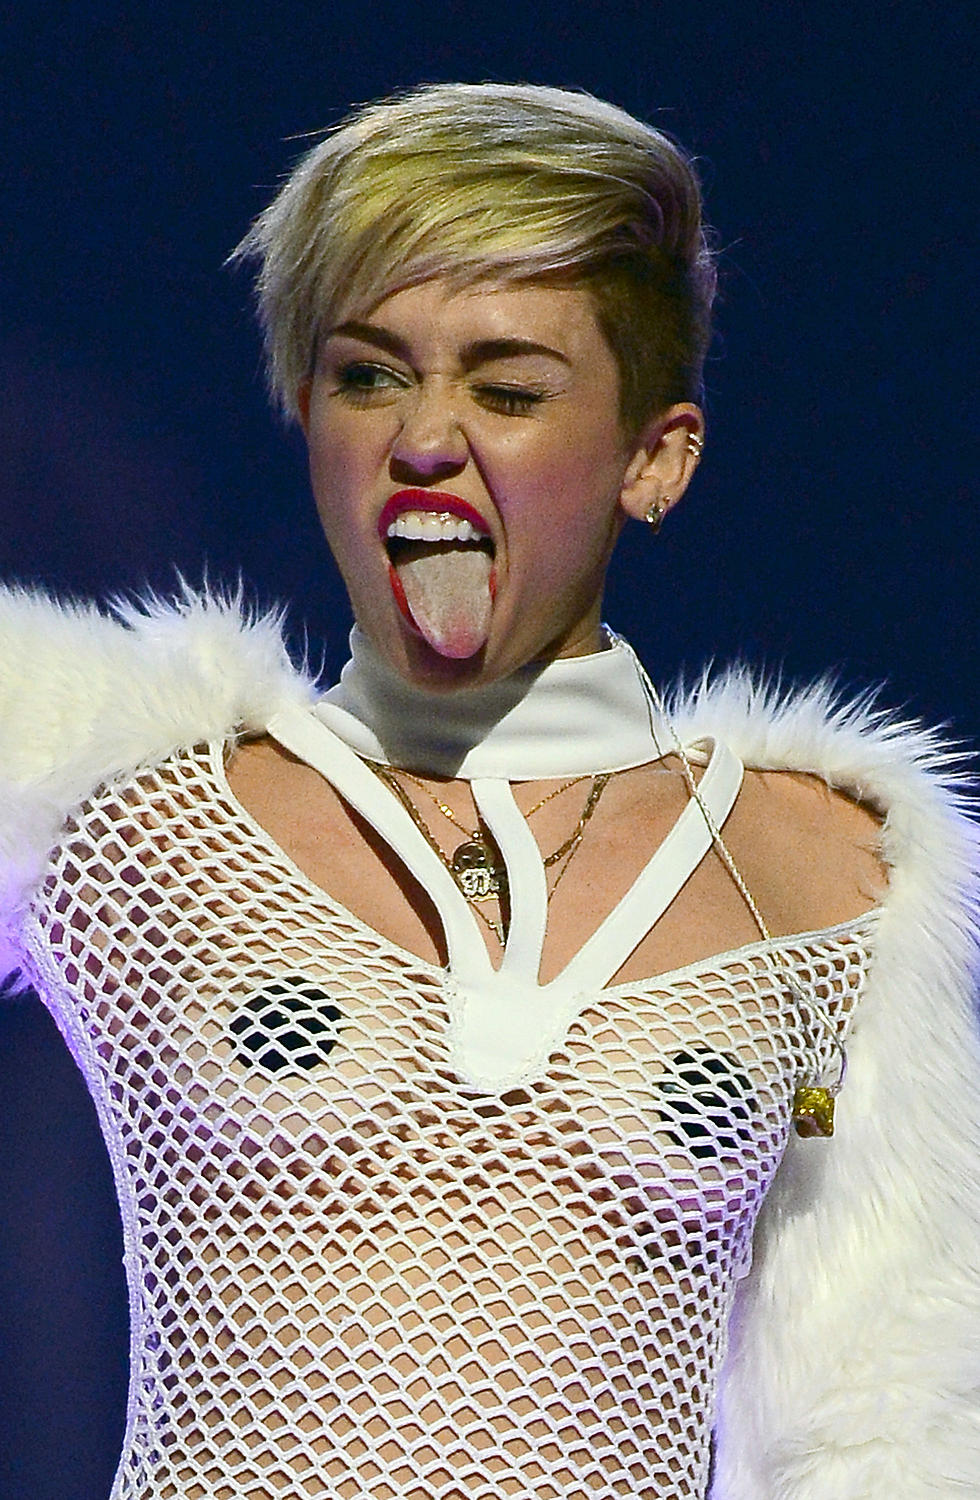 Miley Cyrus Explains